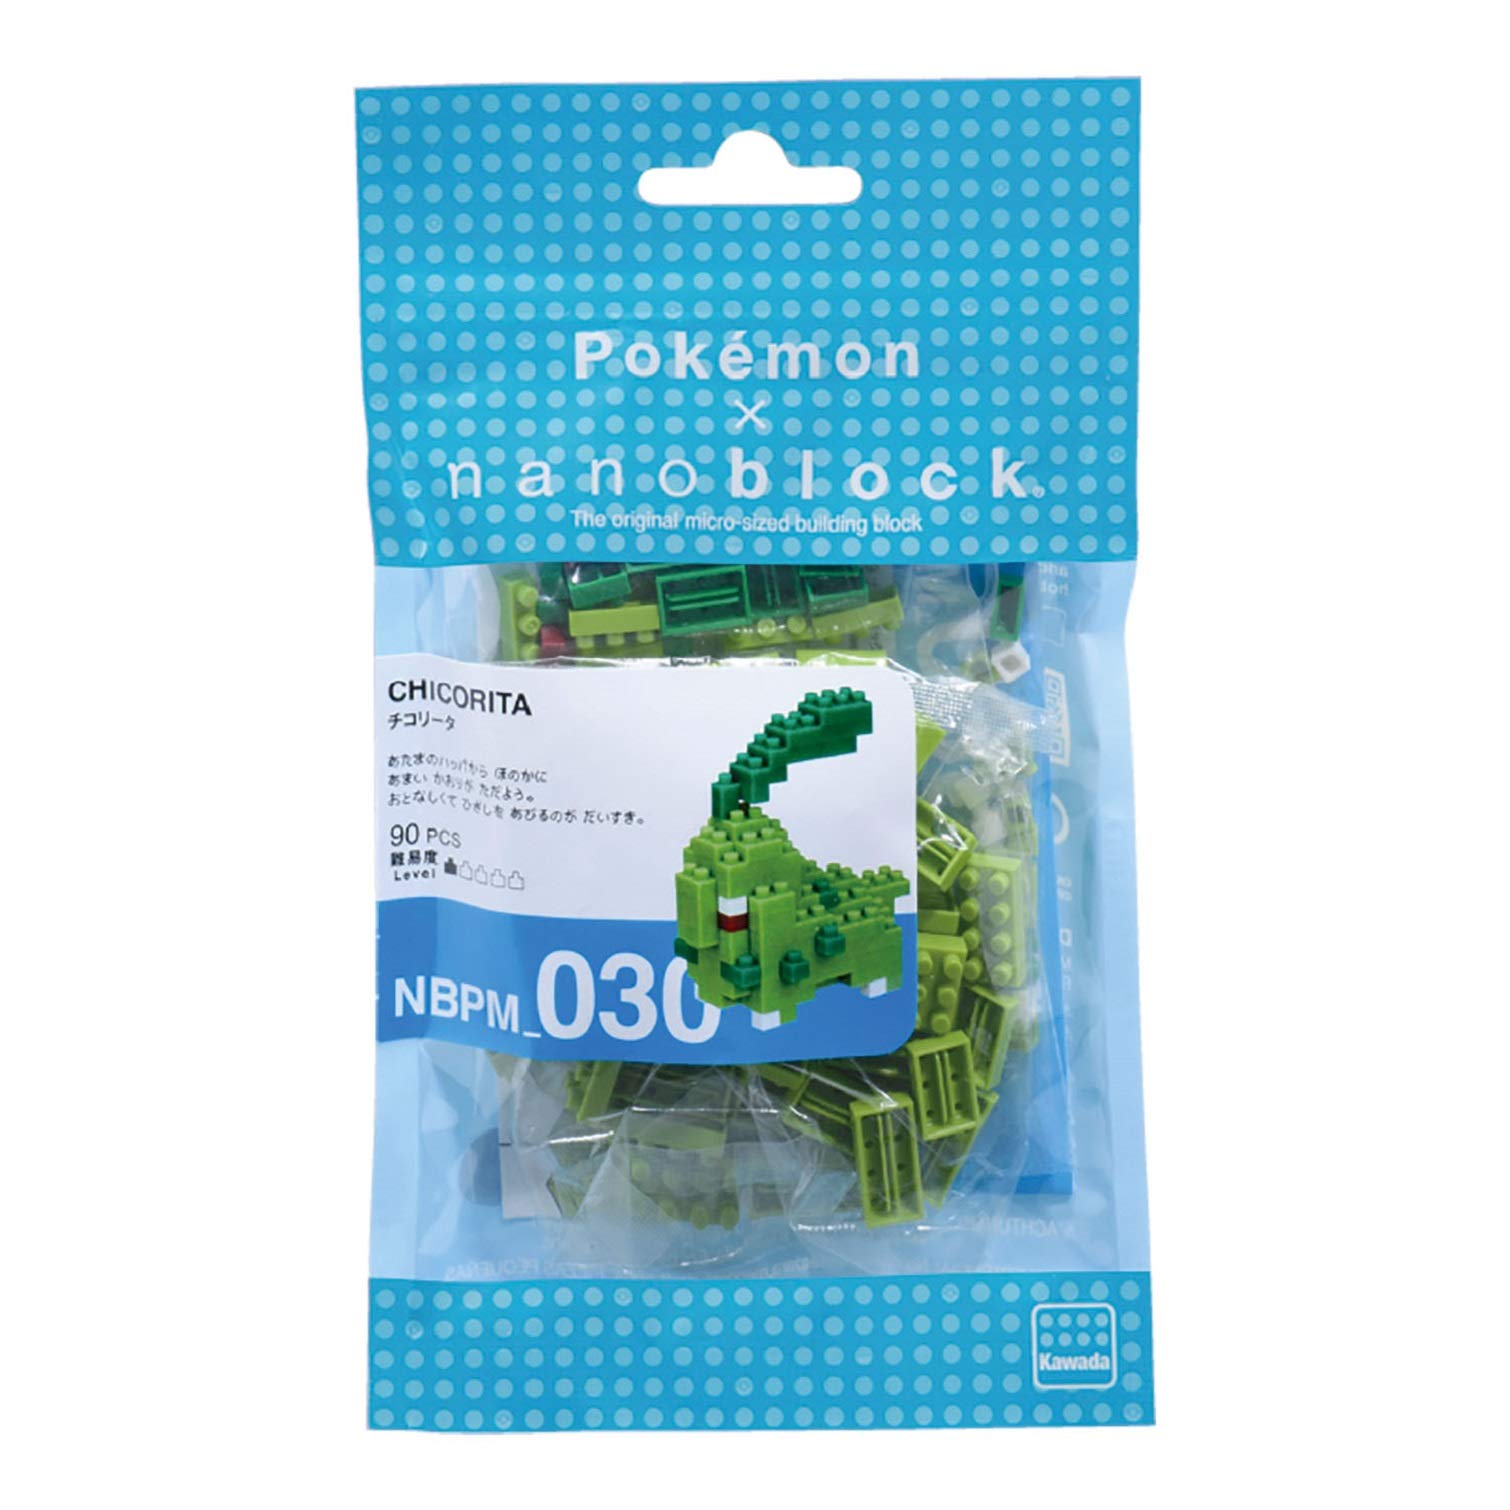 Nanoblock - Pokemon - Chikorita, Nanoblock Pokemon Series Building Kit